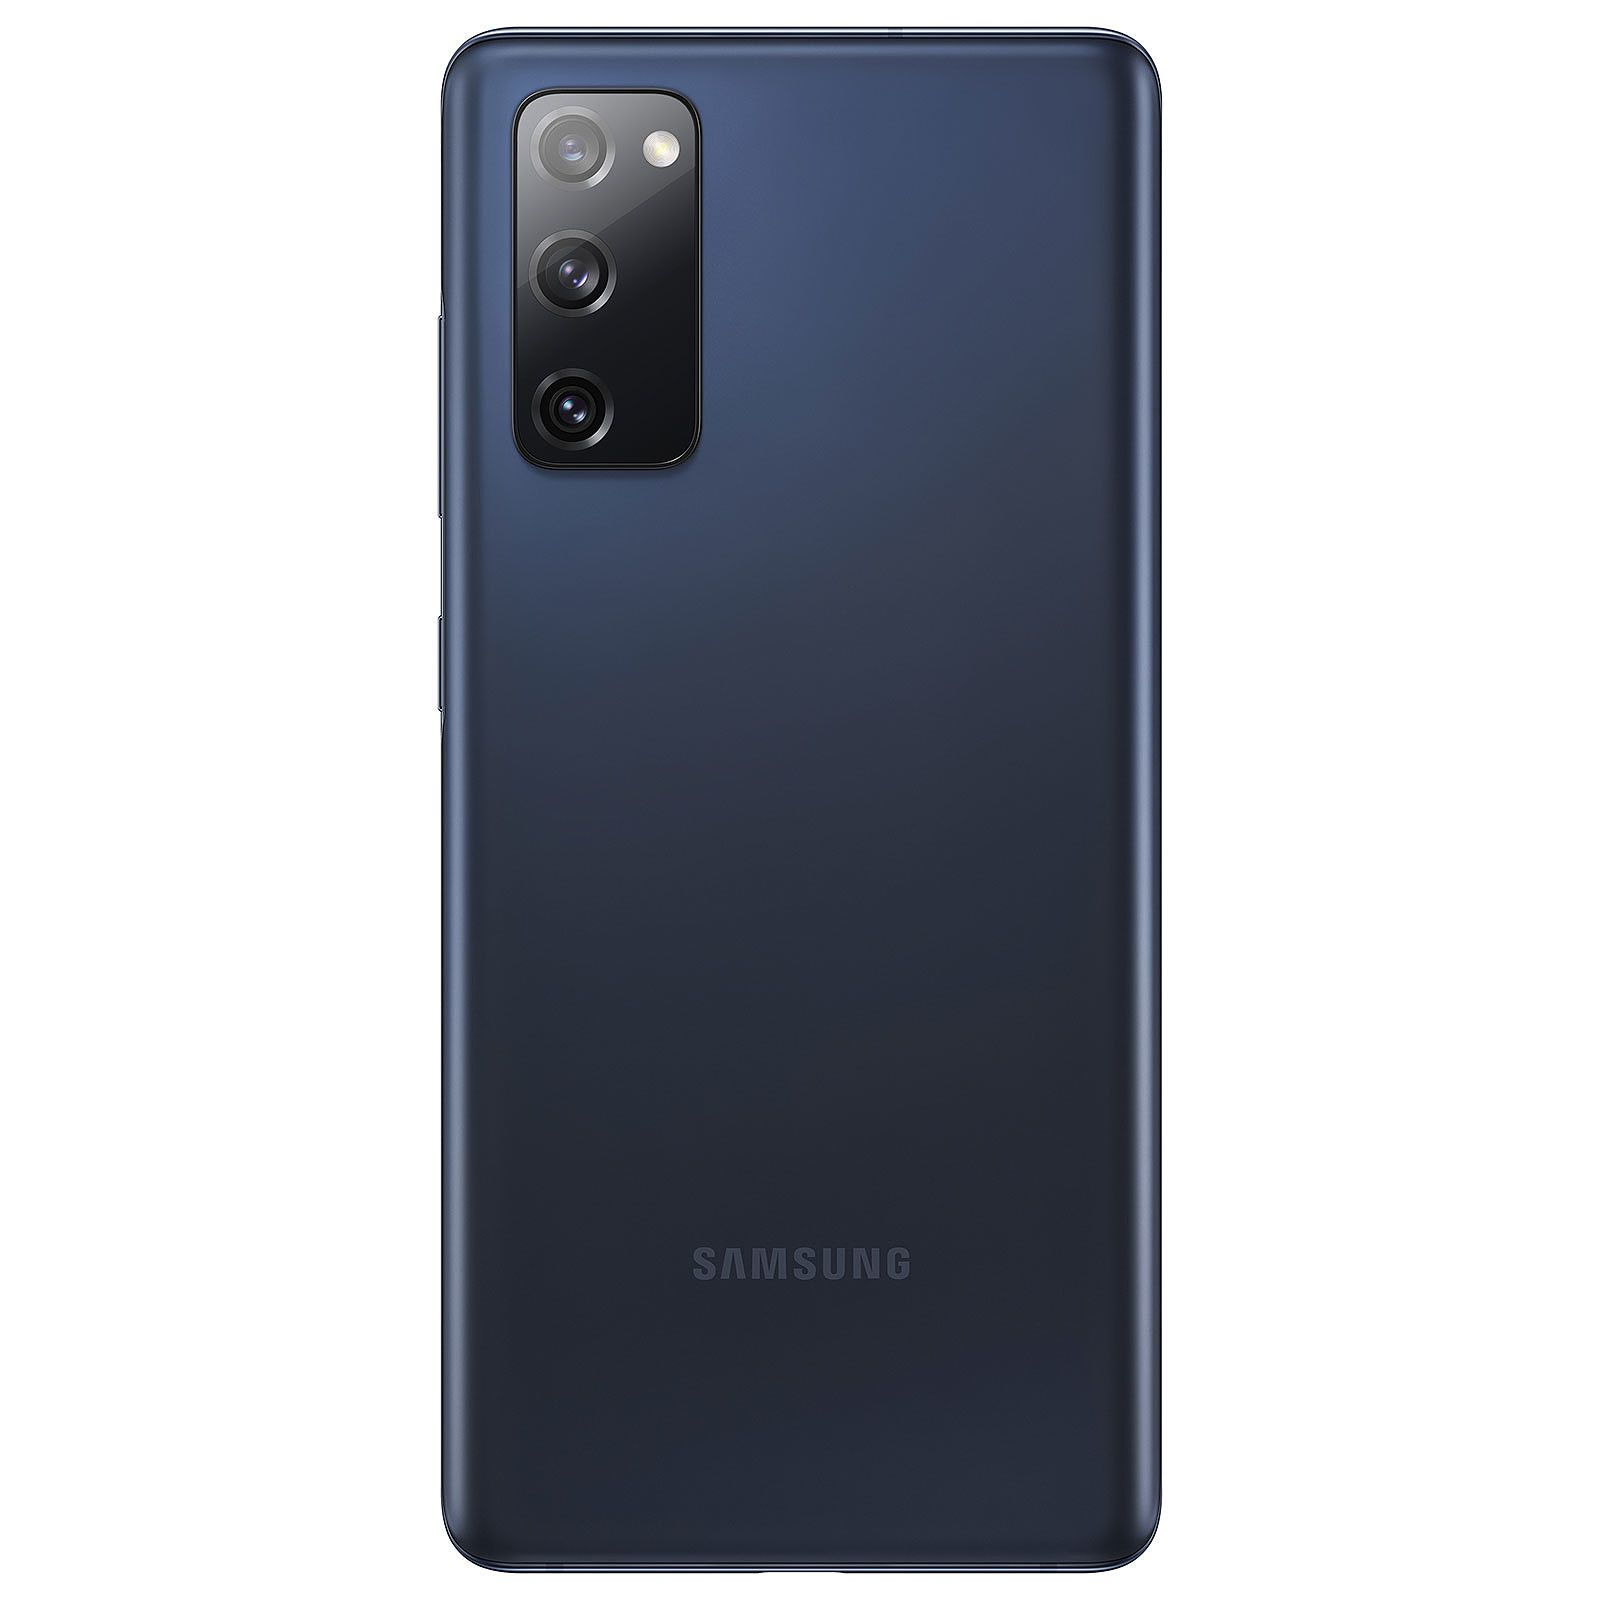 SAMSUNG REFURBISHED (*) Galaxy S20 128 Dual GB GB (dual sim) 128 blau SIM FE